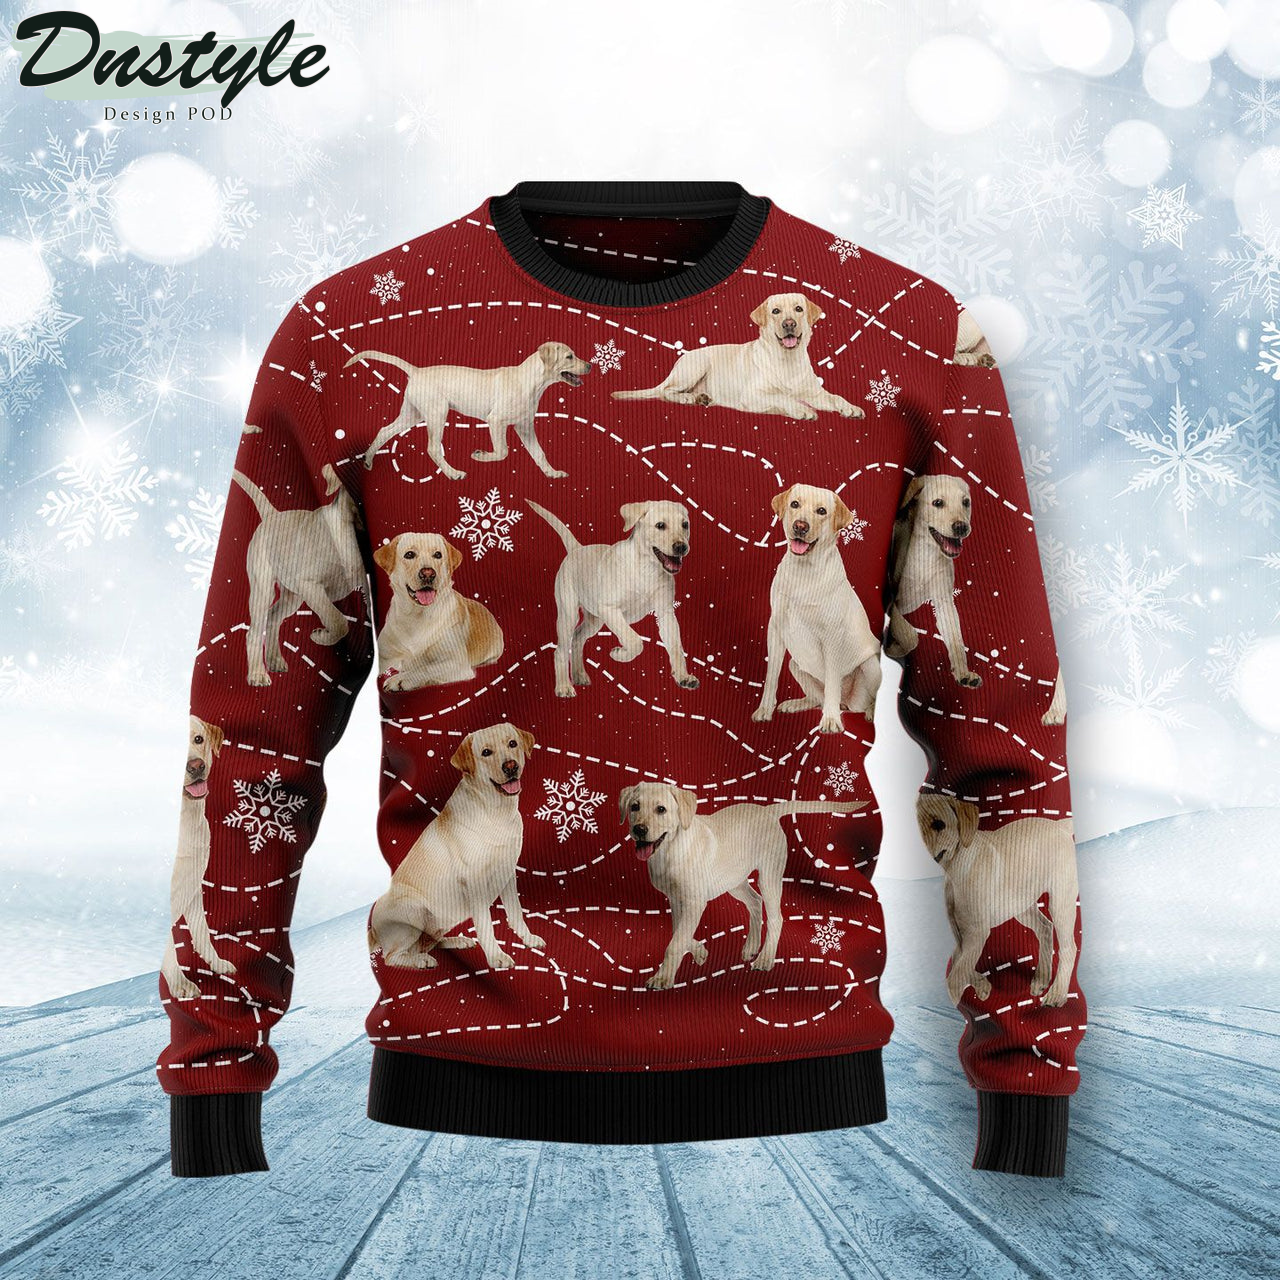 Labrador Retriever Ugly Christmas Sweater